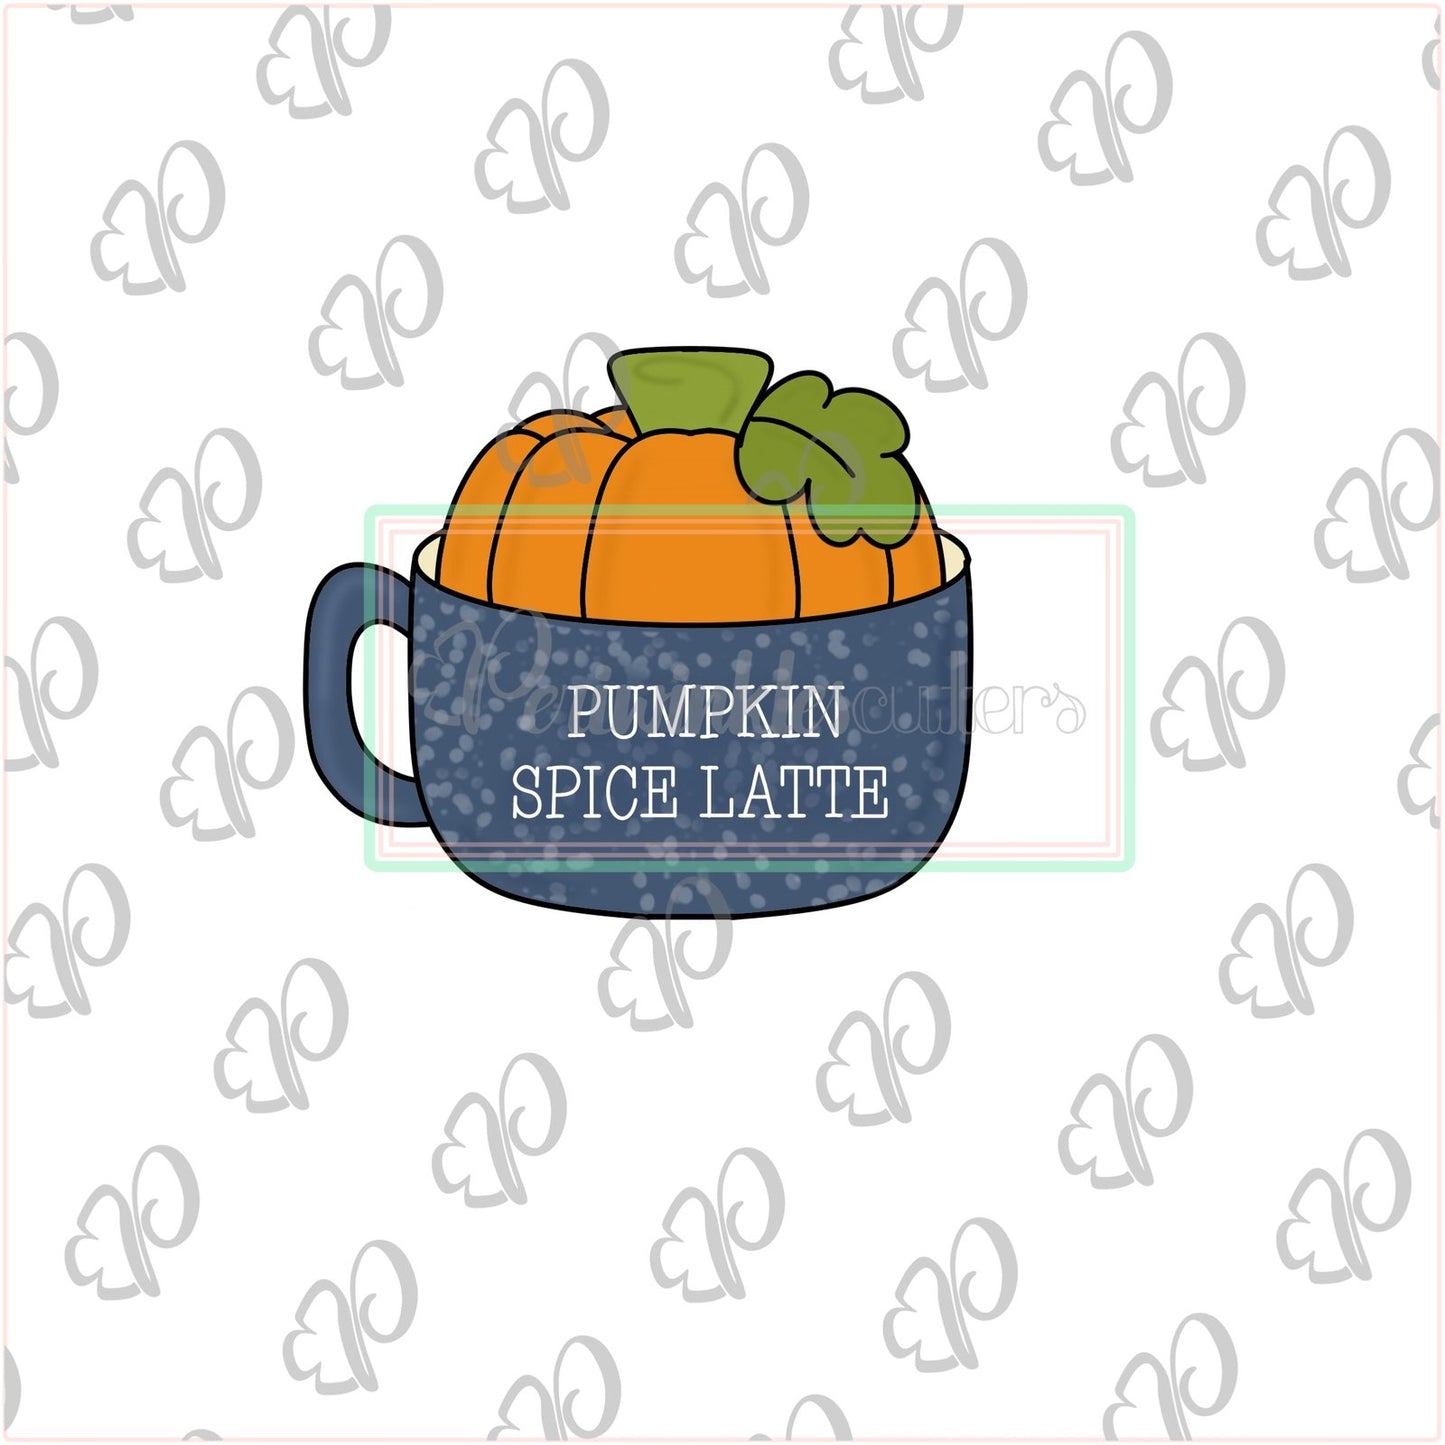 Pumpkin Spice Latte Cookie Cutter - Mug Cookie Cutter - Periwinkles Cutters